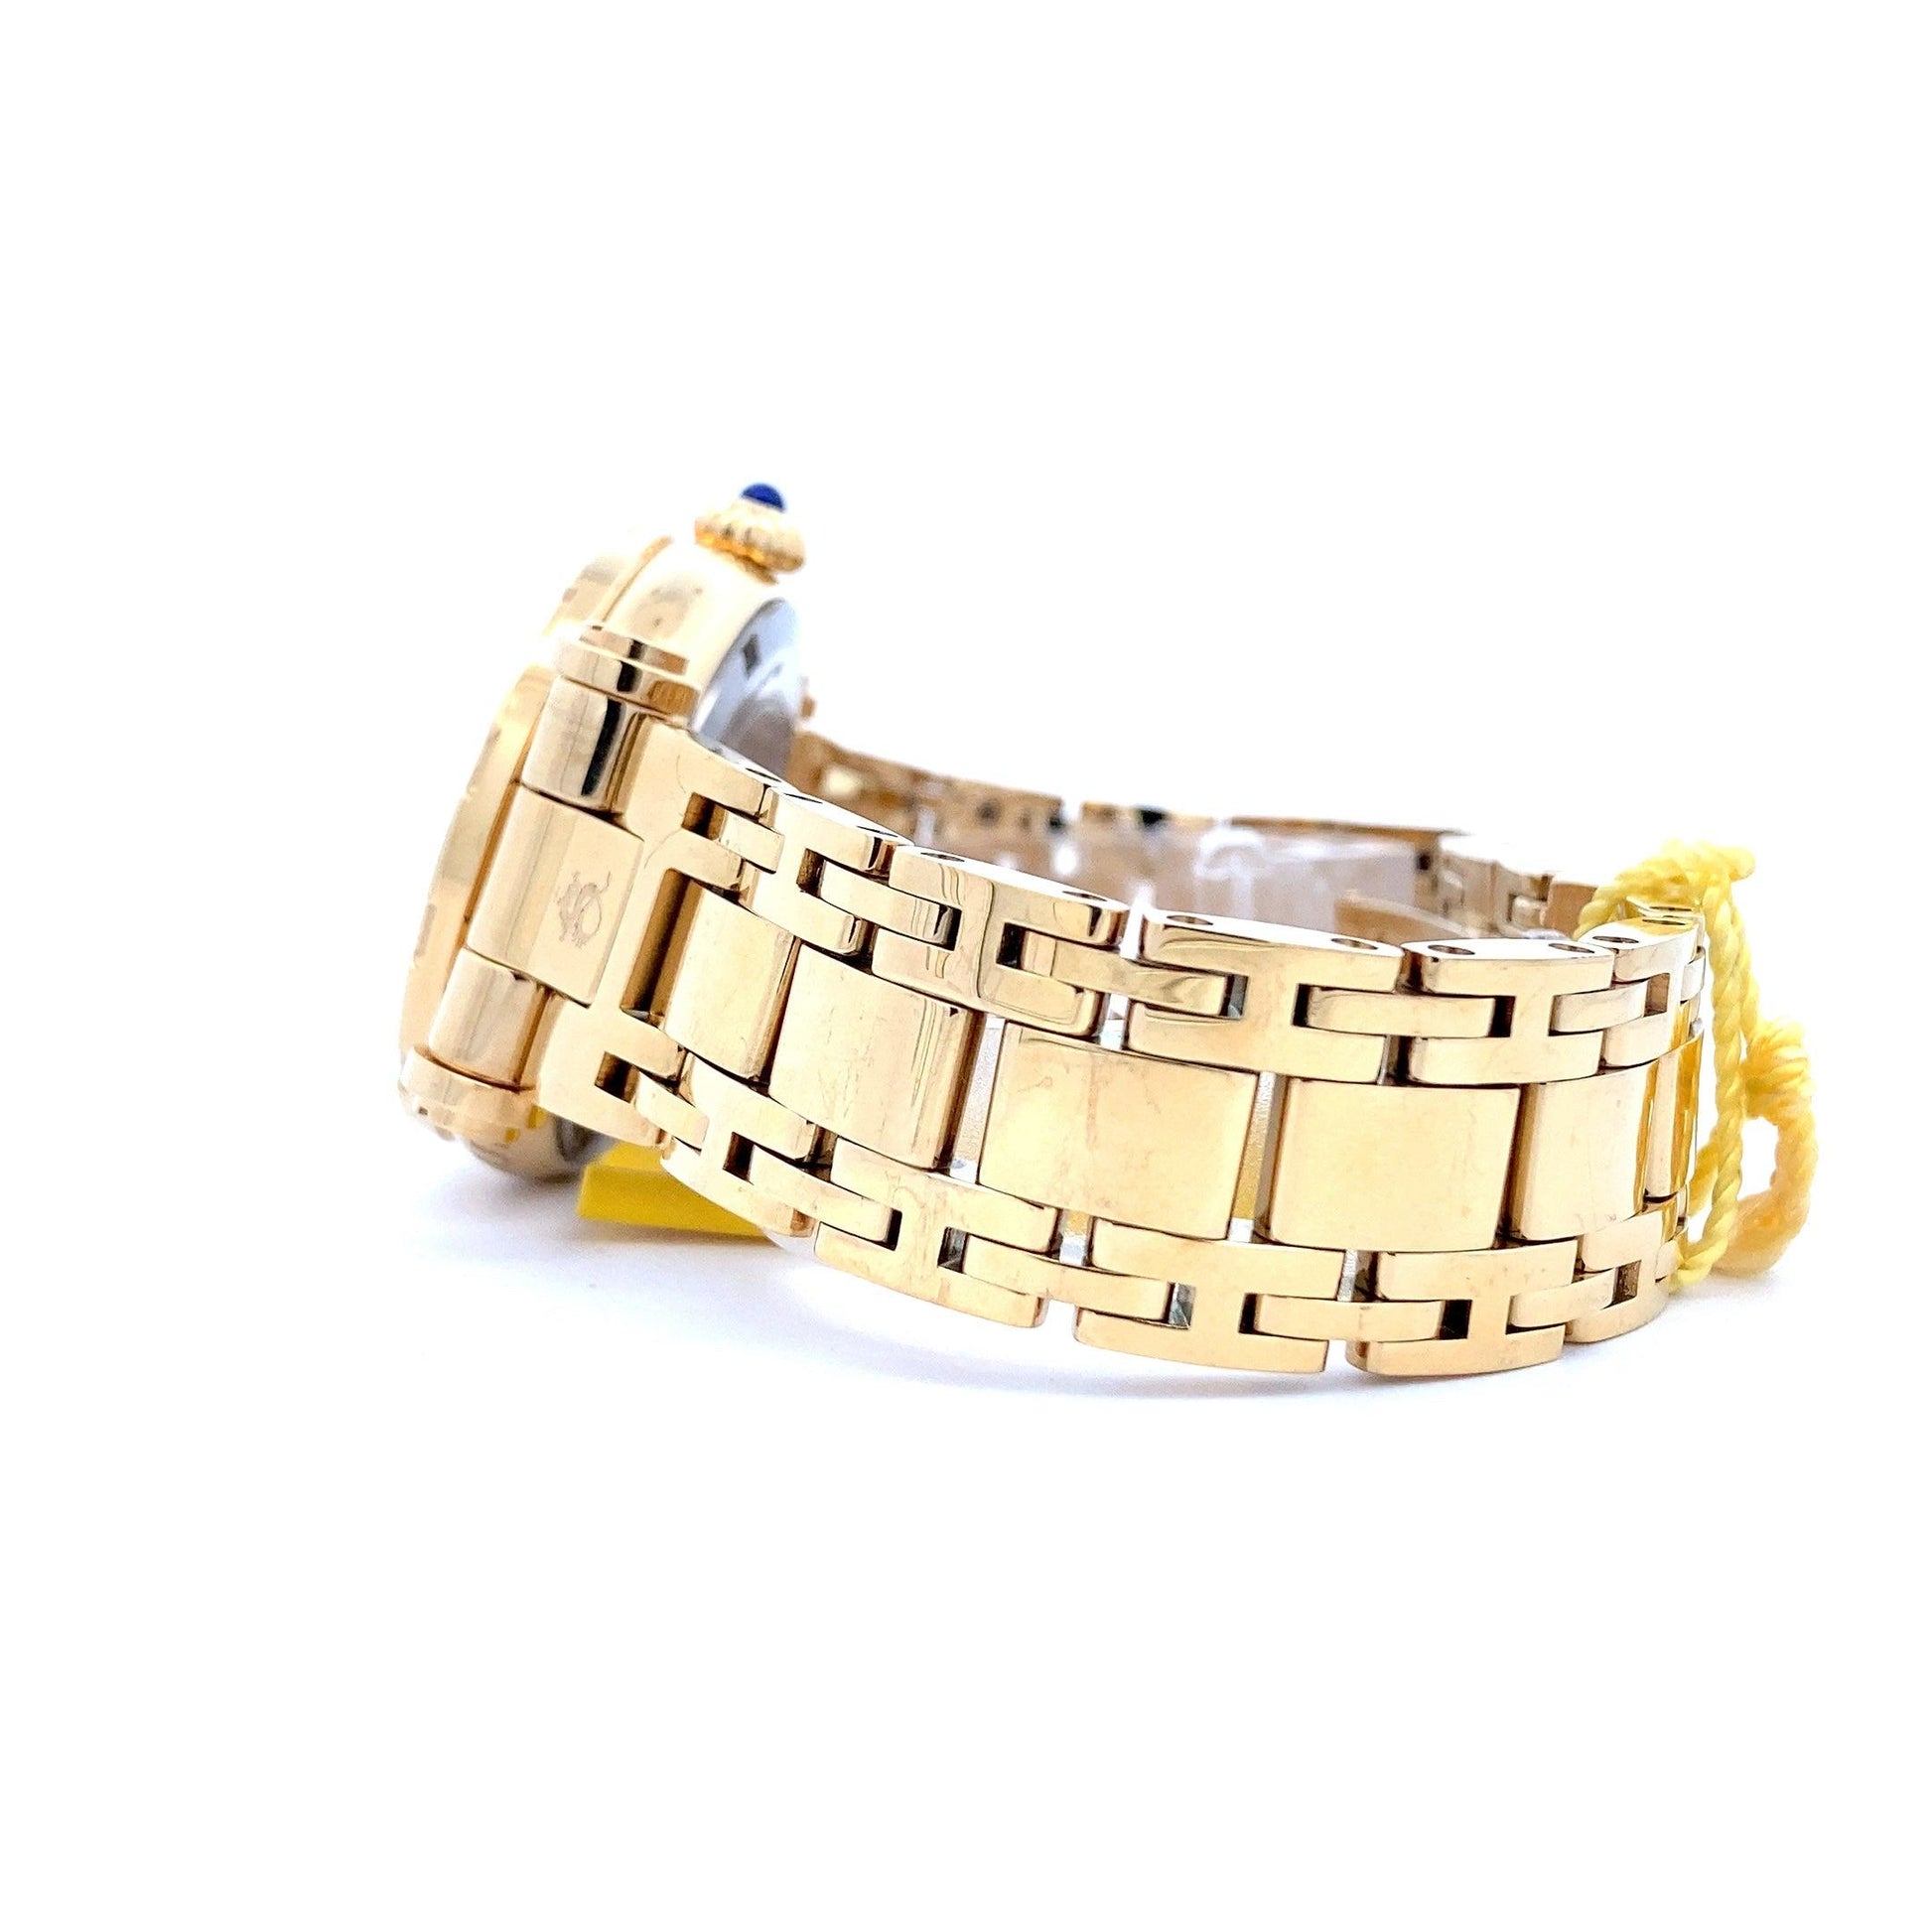 Invicta Subaqua Gold-Tone Acero Inoxidable Reloj de Mujer 24428 - ipawnishop.com